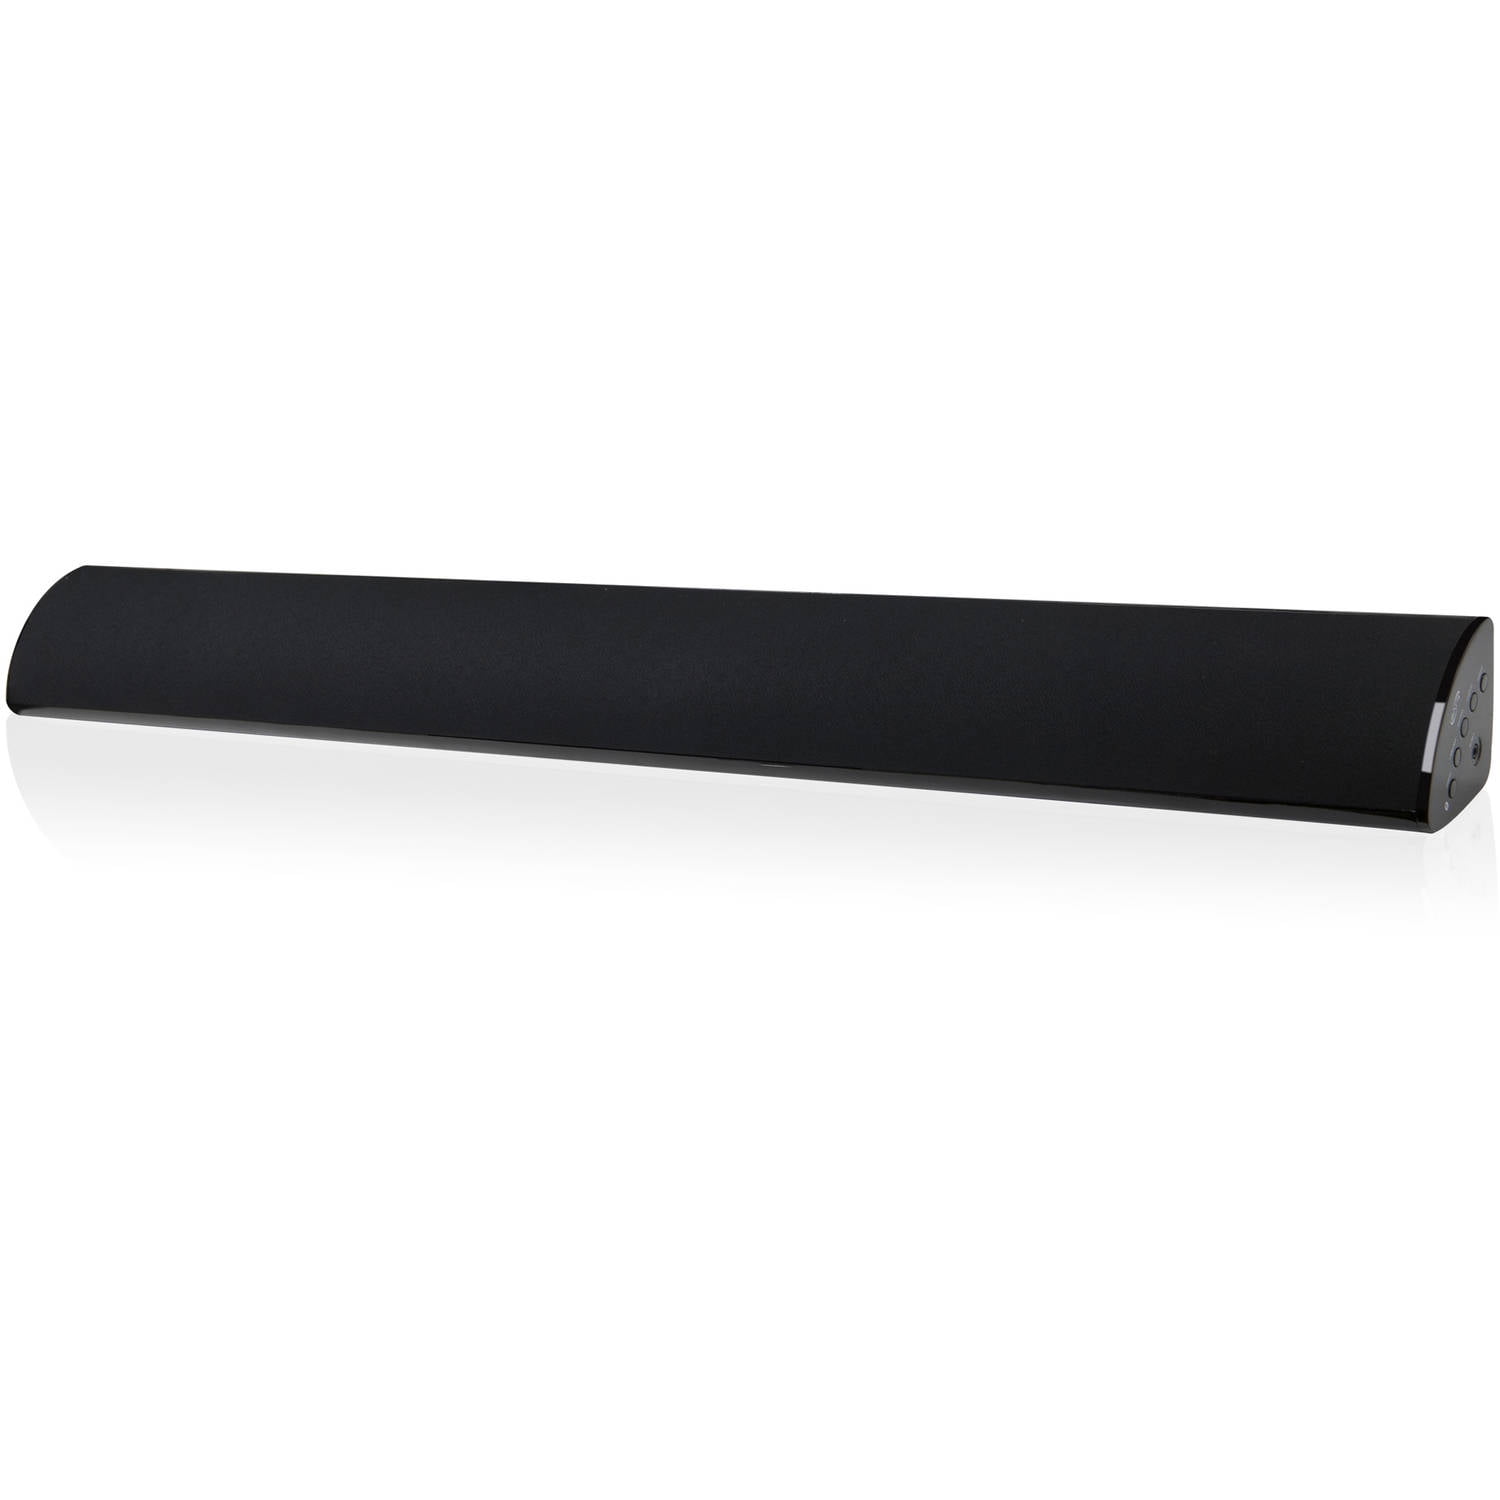 TCL Alto 6 32” 2.0ch 120W Sound Bar, Black, TS6100-NA - Walmart 